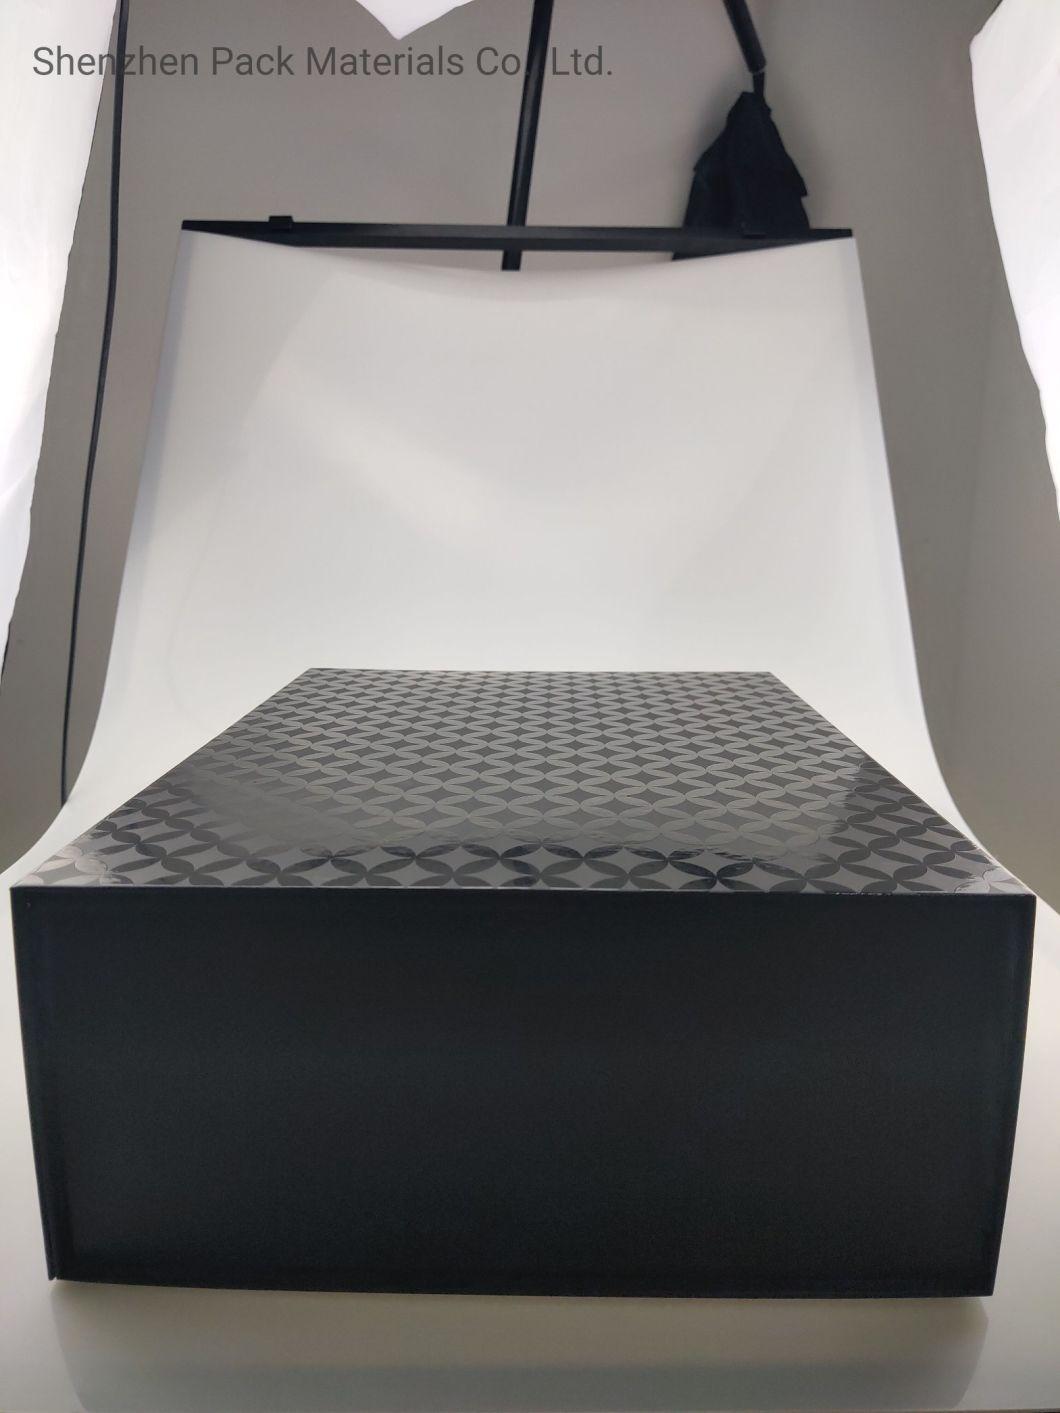 Black Matt Folding Magnetic Logo Custom Packaging Foldable Hardness Luxury Gift High Garment Shoes Box